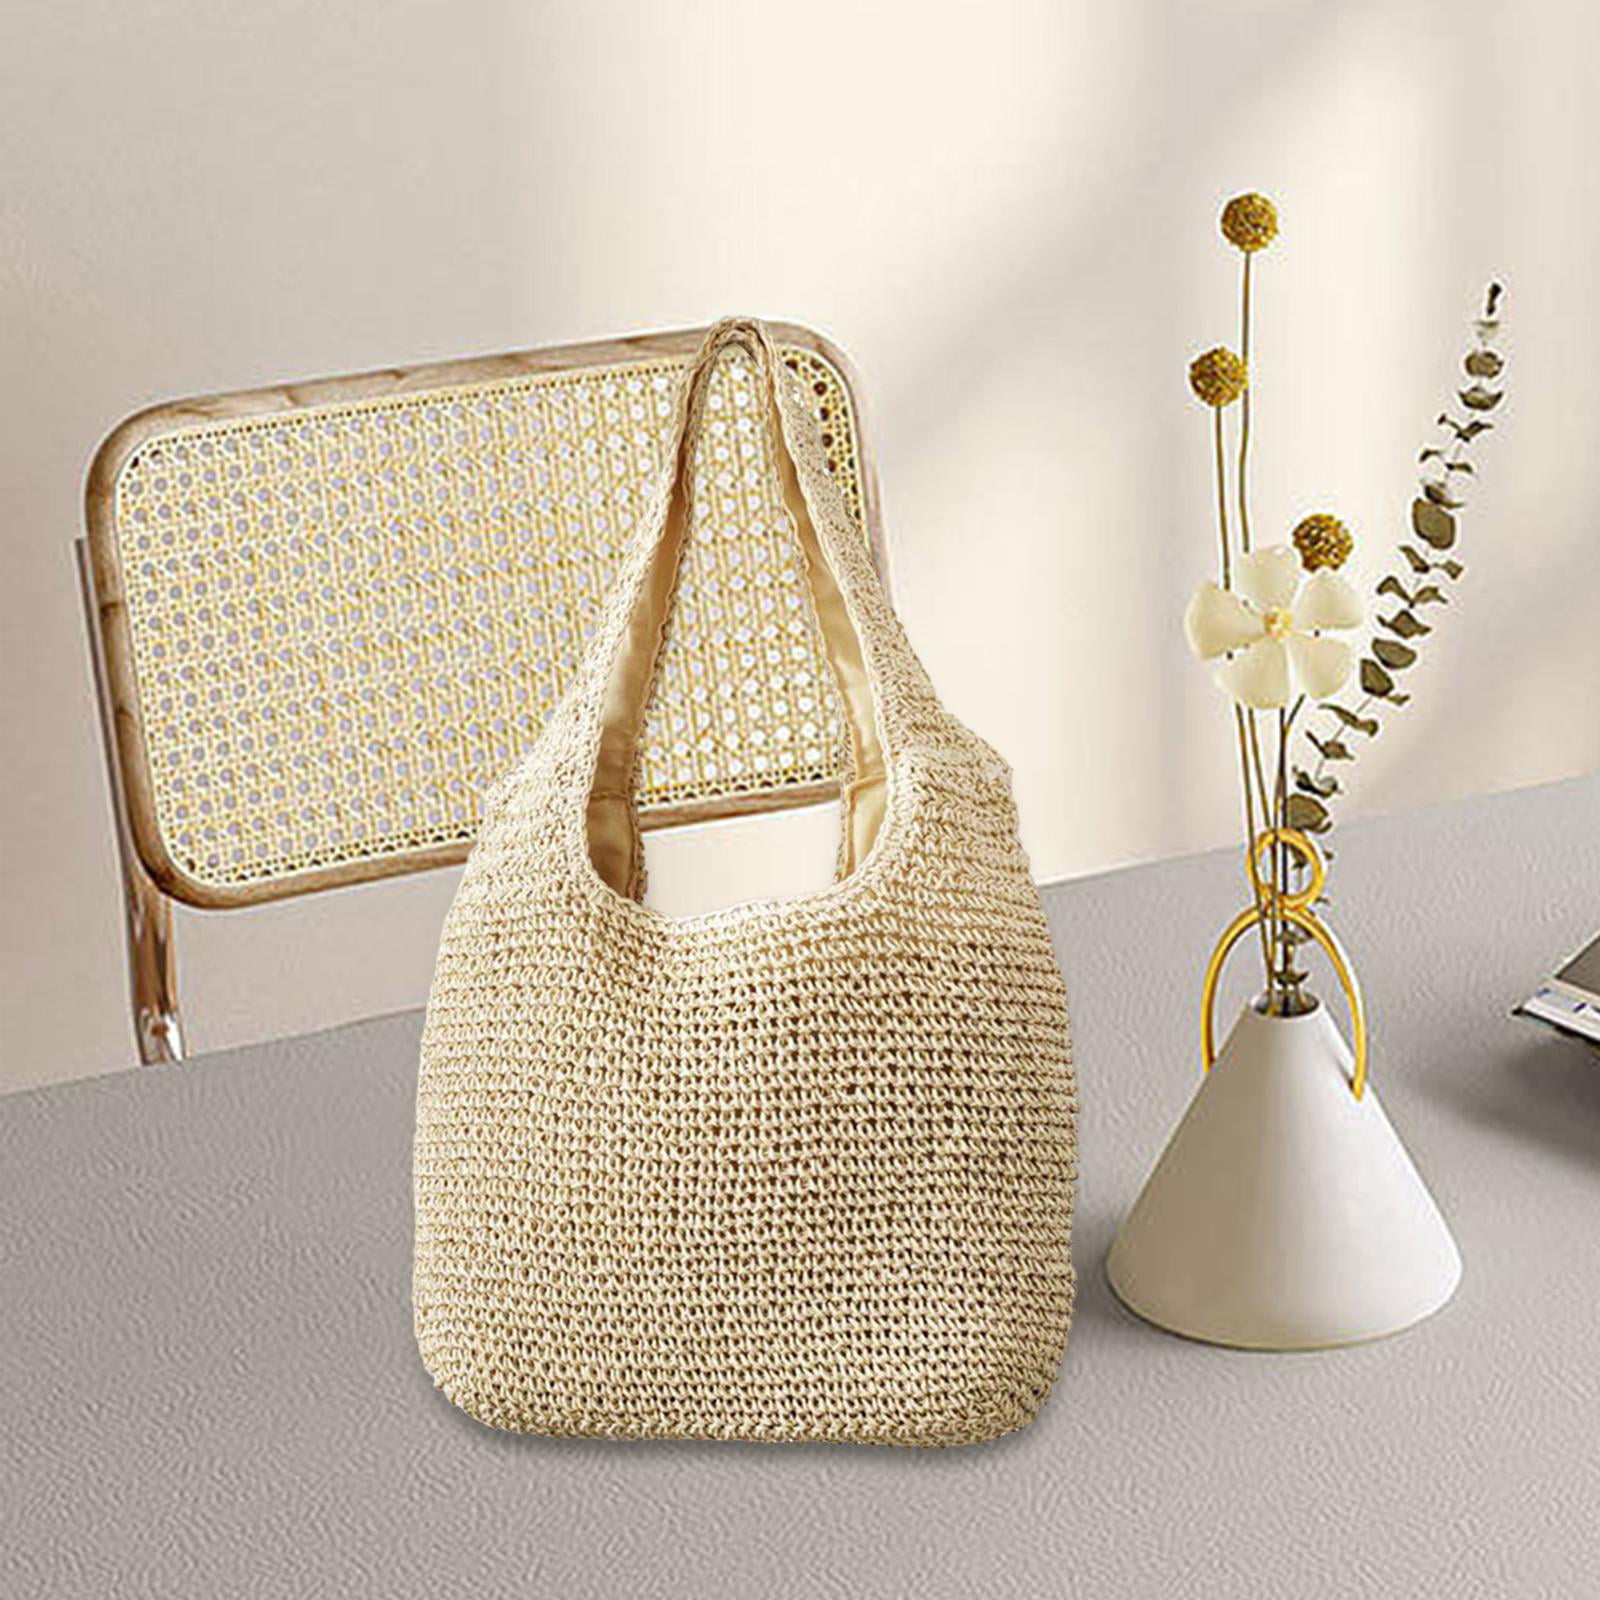 Beige crochet bag pattern for women Crochet summer handbag - Inspire Uplift